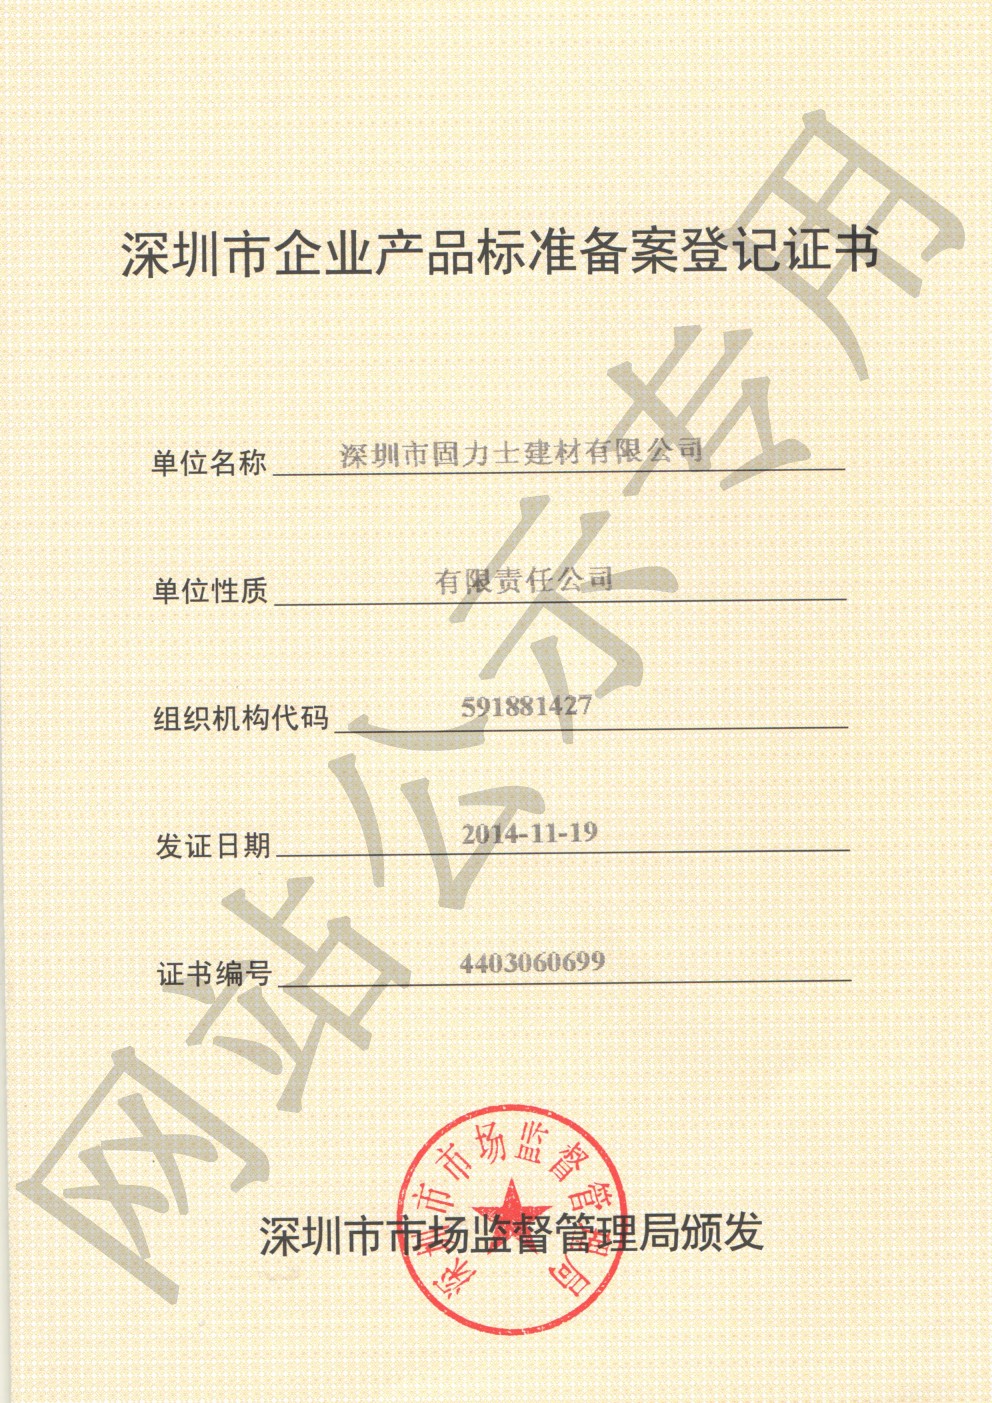 瓮安企业产品标准登记证书